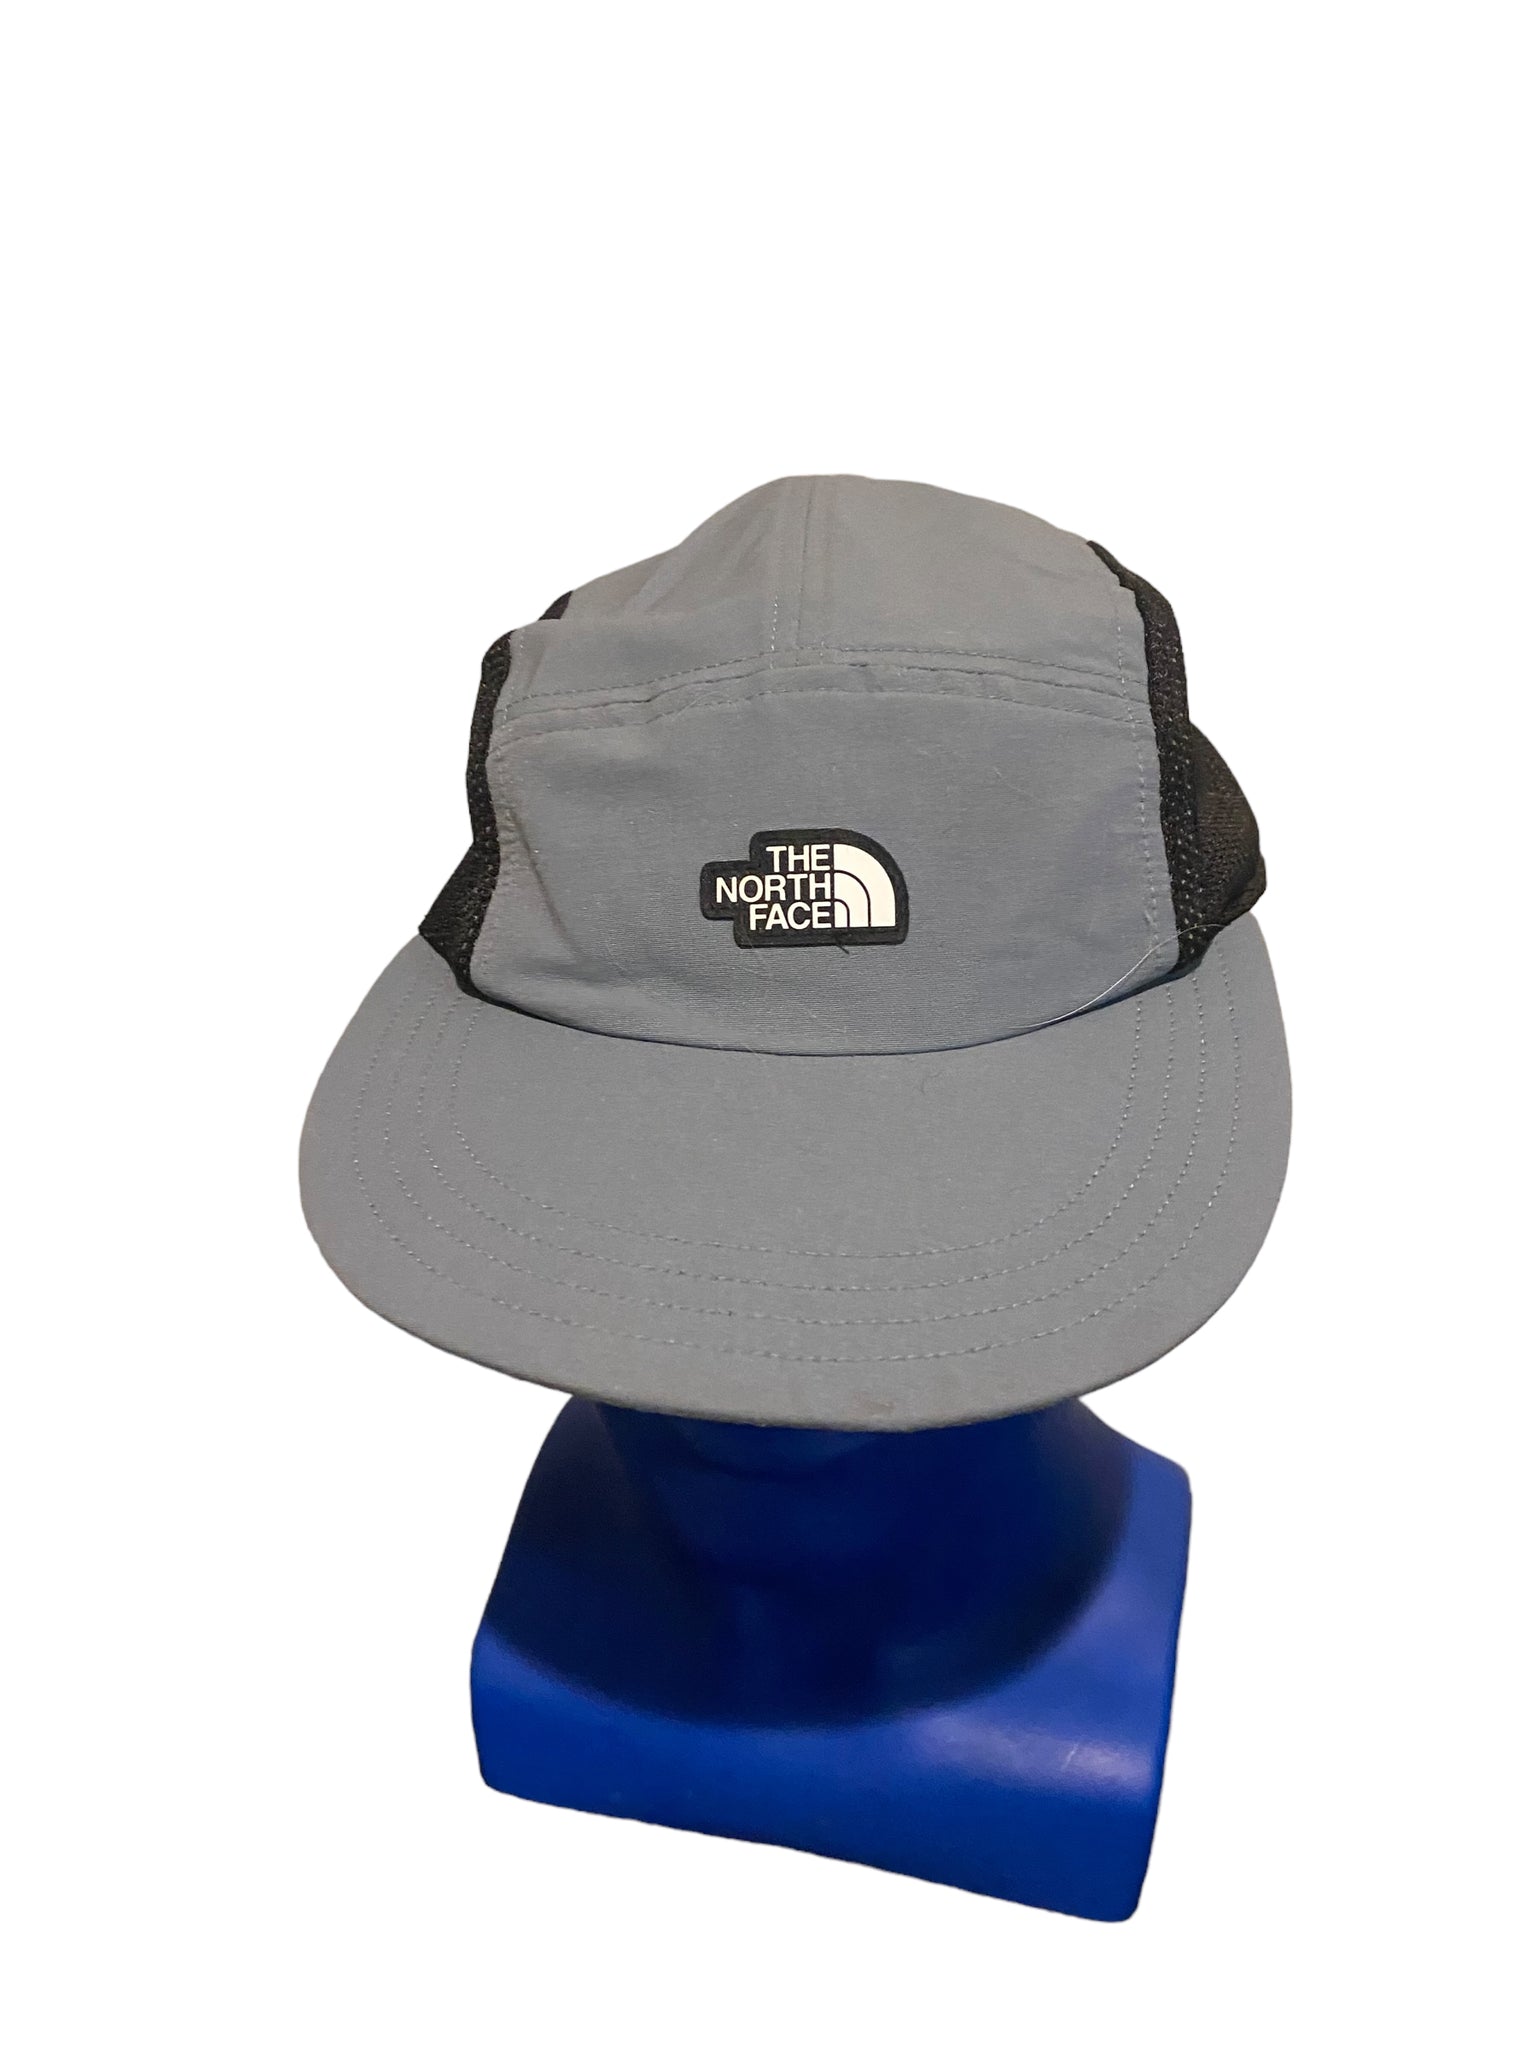 North Face Five Panel Camper Hat Adjustable Strap